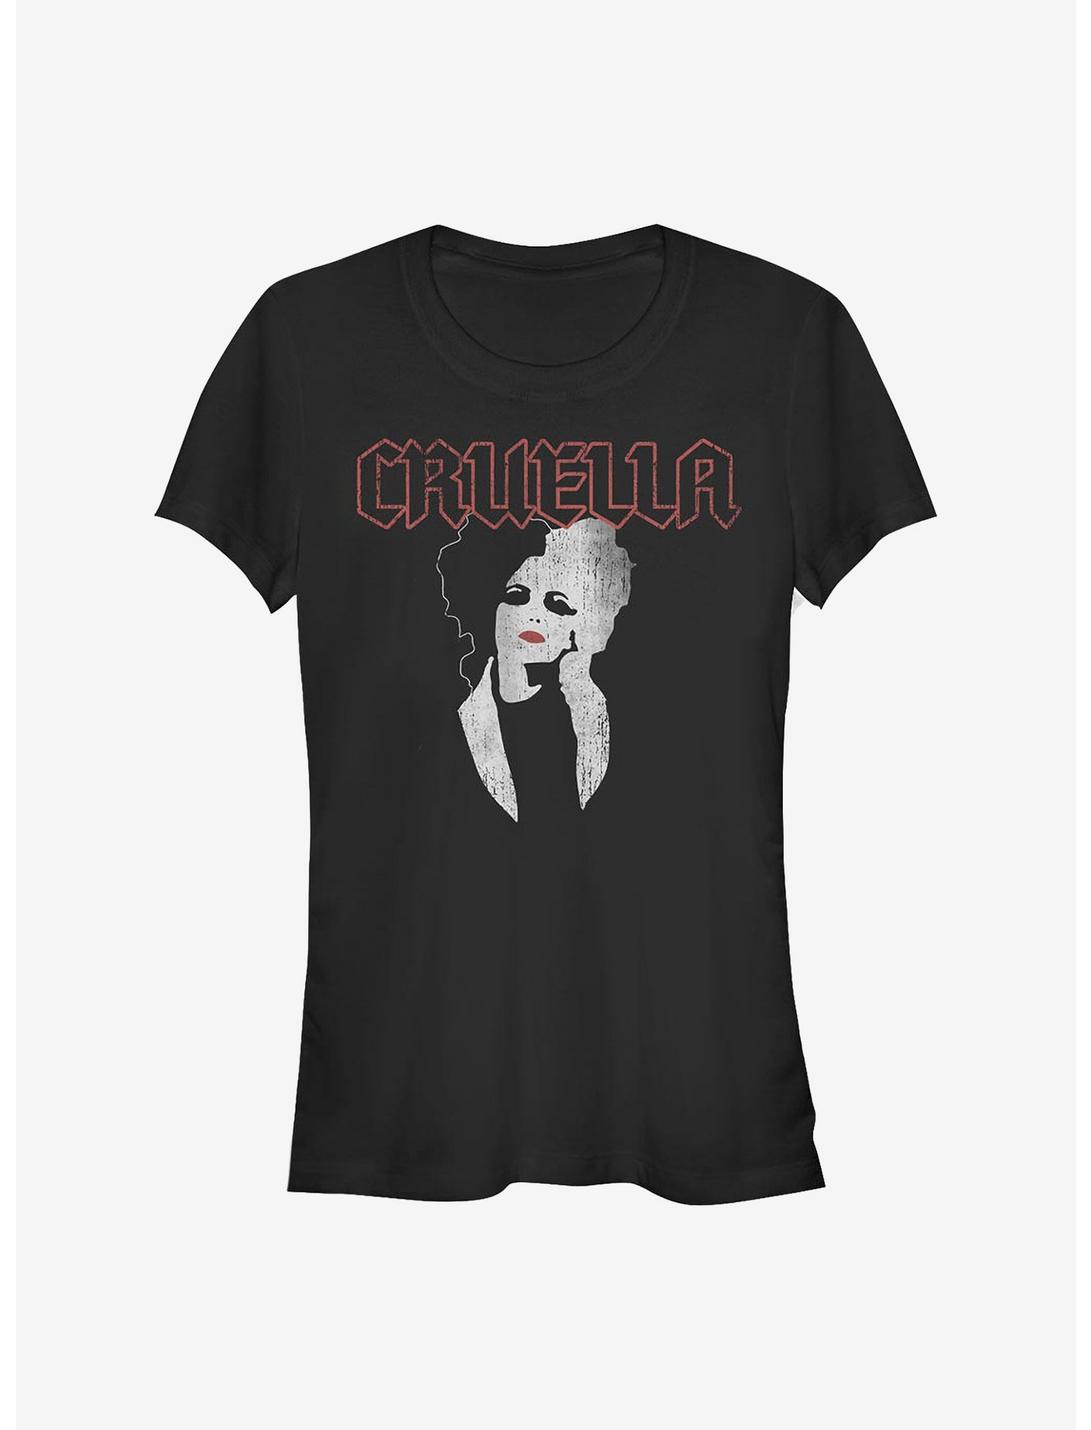 Disney Cruella Rock Girls T-Shirt, BLACK, hi-res